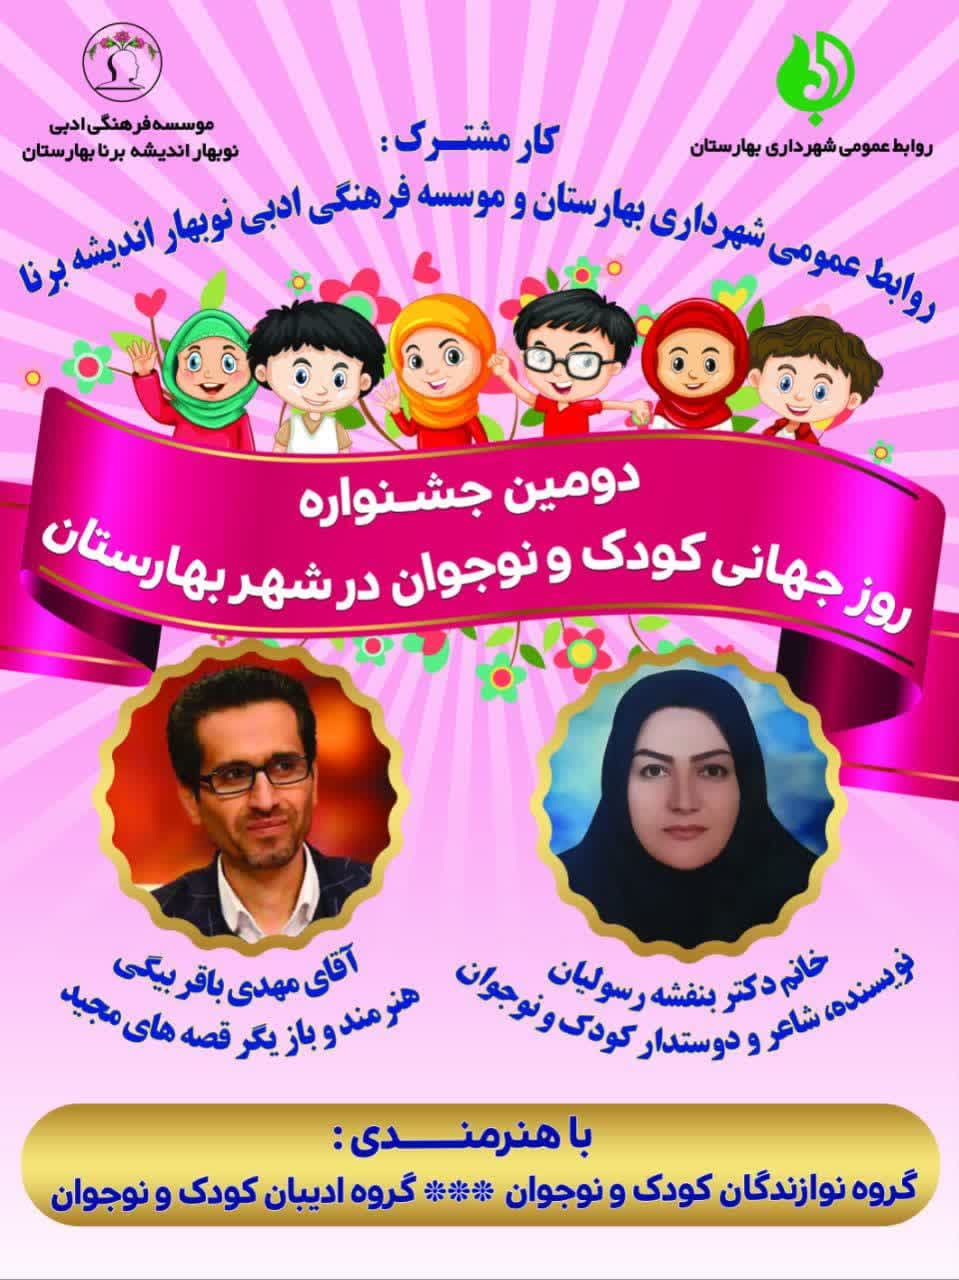 جشنواره روز جهانی کودک و نوجوان در شهر بهارستان